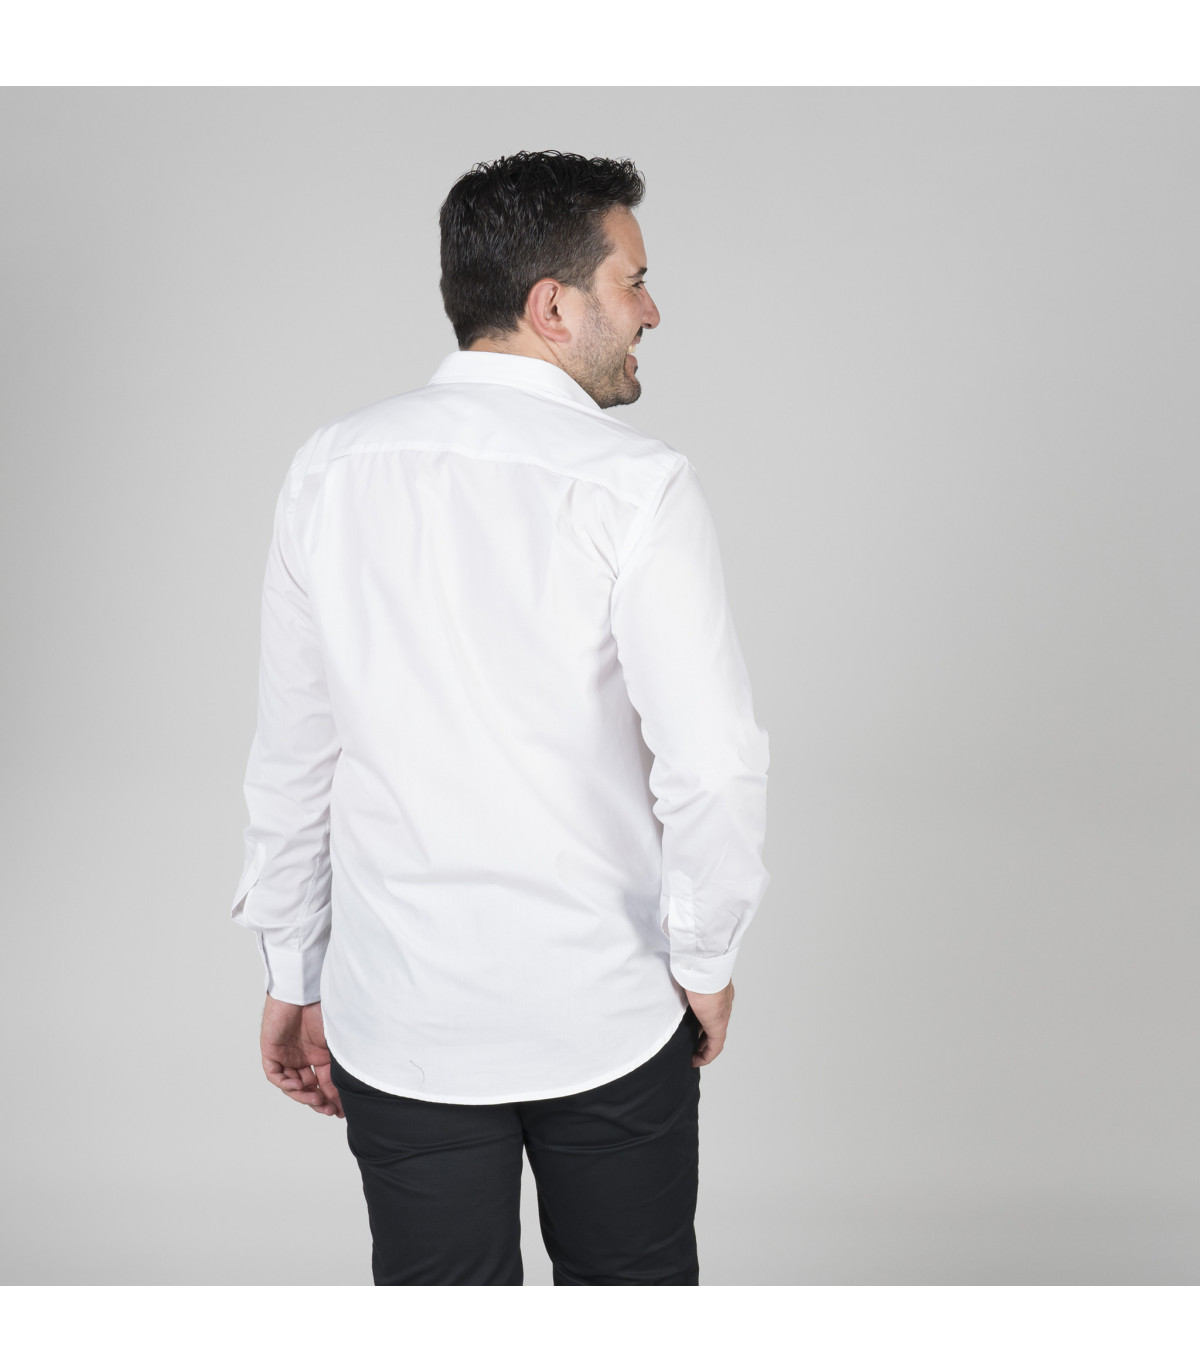 Camiseta masculina de manga longa com lenço e dobras nas costas